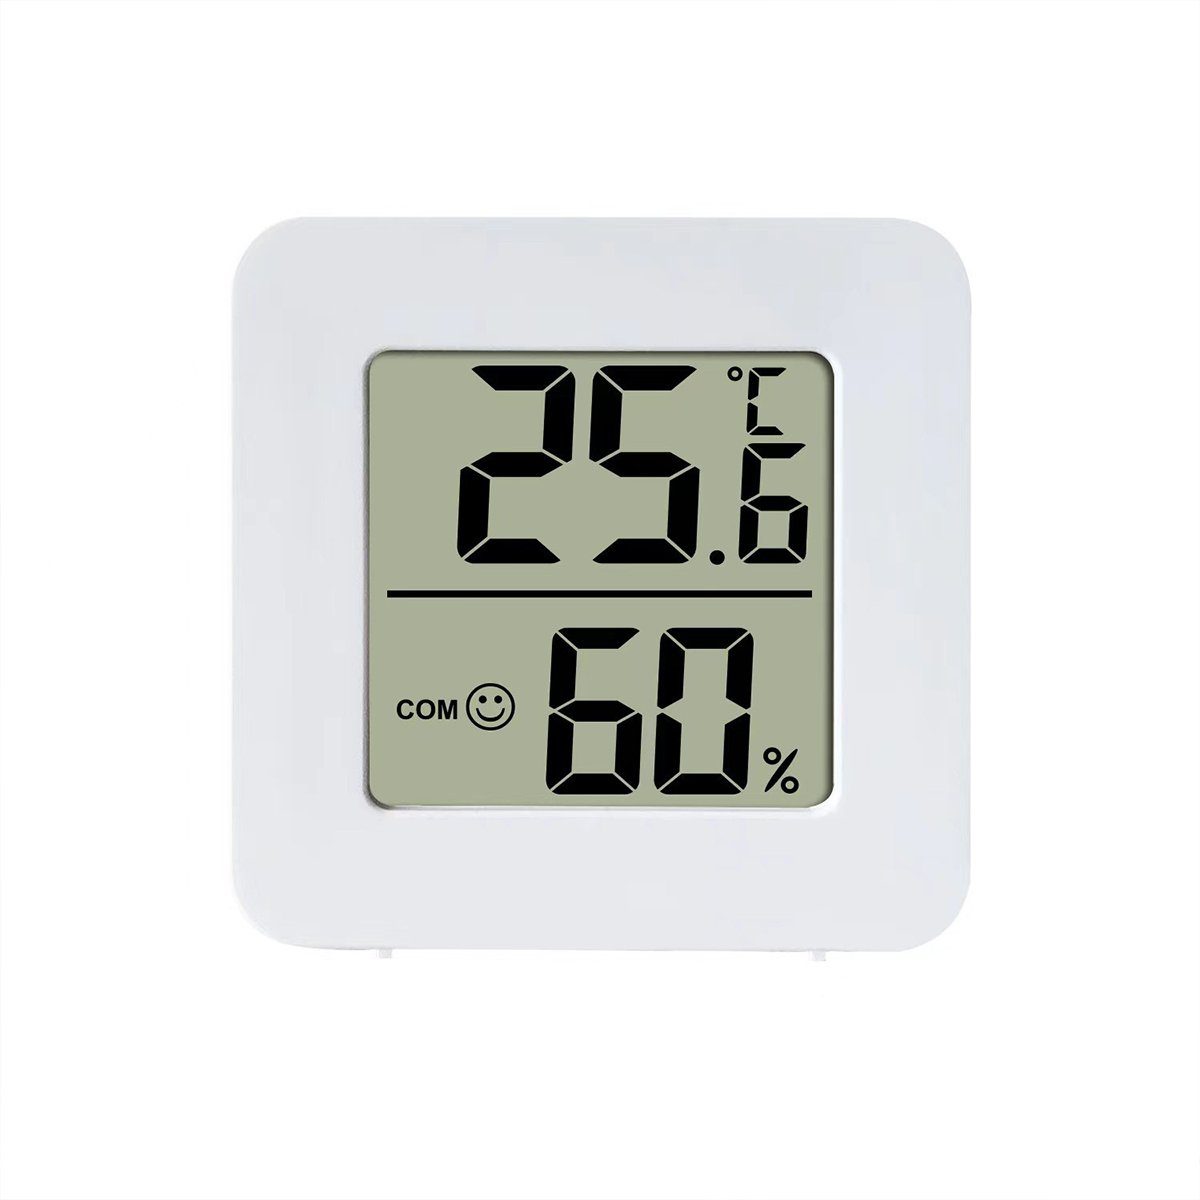 für Temperatur Feuchtemessgerät Thermometer Monitor Digital Raumthermometer Innenraum Raumthermometer Hygrometer Innen, XDeer